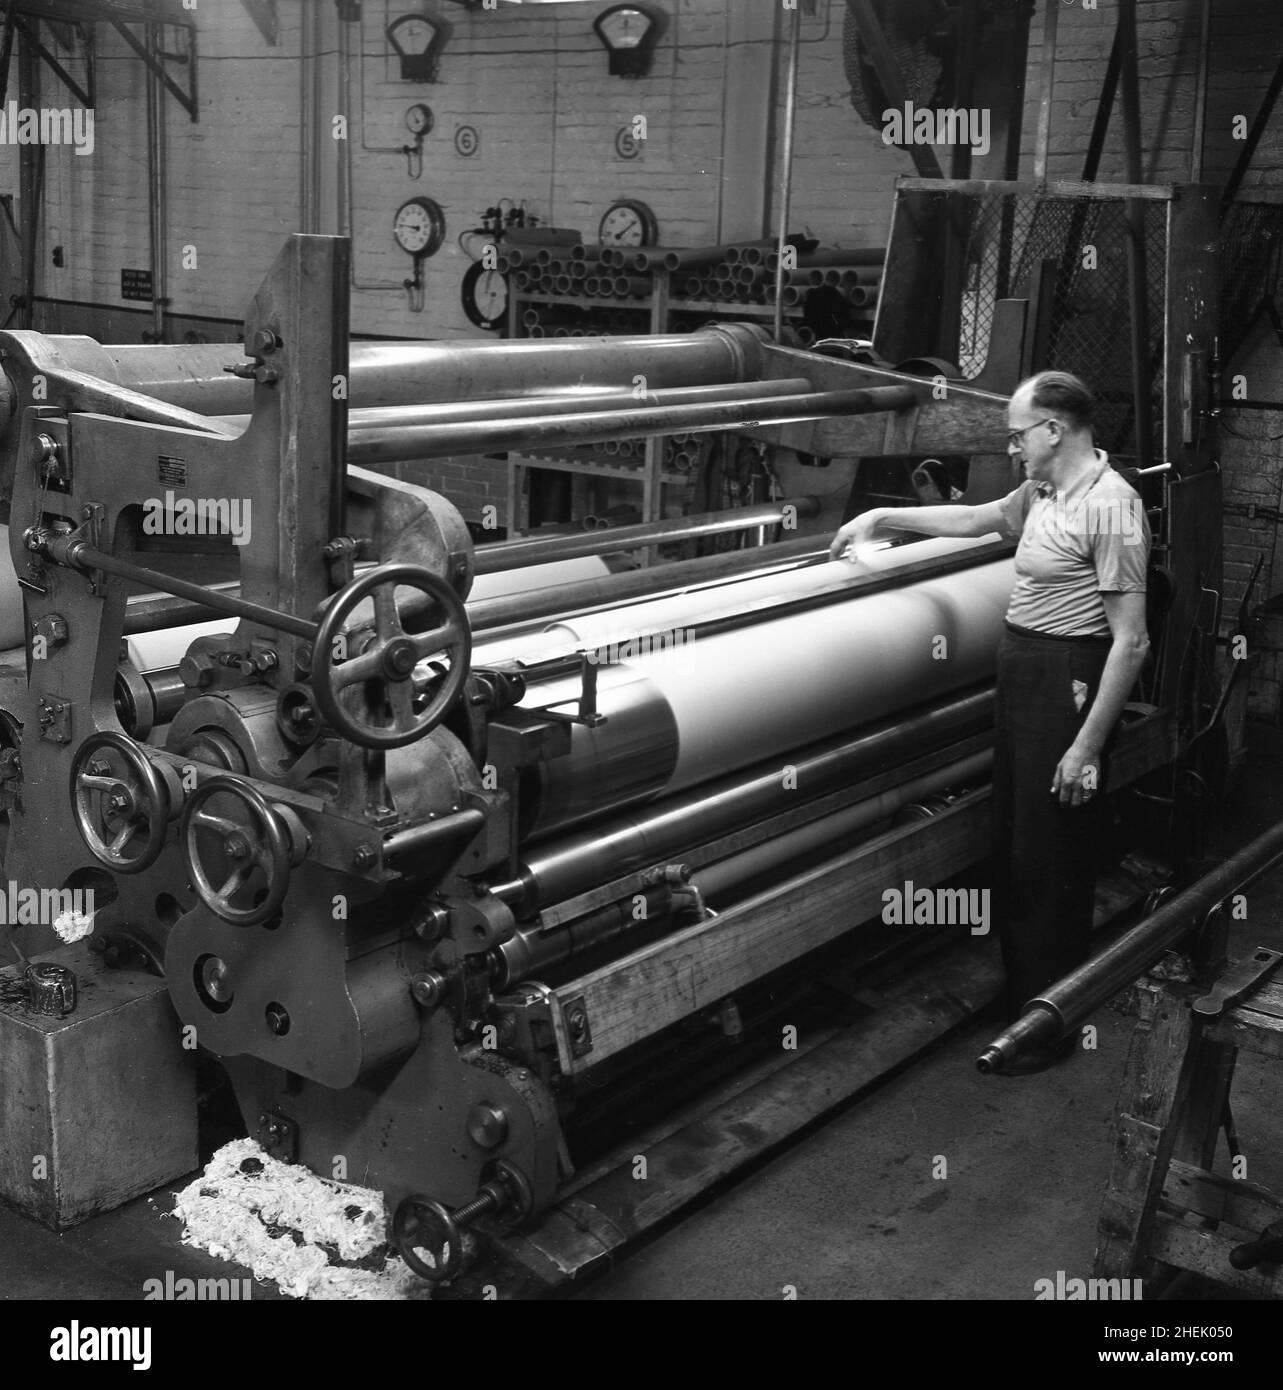 1950s, historisch, ein männlicher Arbeiter der großen Papiermaschine in der Fabrik in Brittains, Cheddleton, England, Großbritannien. In dieser Zeit war Brittains ein führender britischer Papierhersteller, dessen Geschichte bis ins Jahr 1854 zurückreicht, als sie die Nachfolge der Brüder Fourdrinier antrat, der Erfinder der ersten Papiermaschine, die ein durchgehendes Blatt Papier produzieren konnte. Thomas Brittain übernahm 1854 die Mühle der Fourdrinier Bros, der das ursprüngliche französische Design entwickelt hatte, und der Fourdrinier-Papiermaschinenbullt revolutionierte 1804 die Papierherstellung. Stockfoto